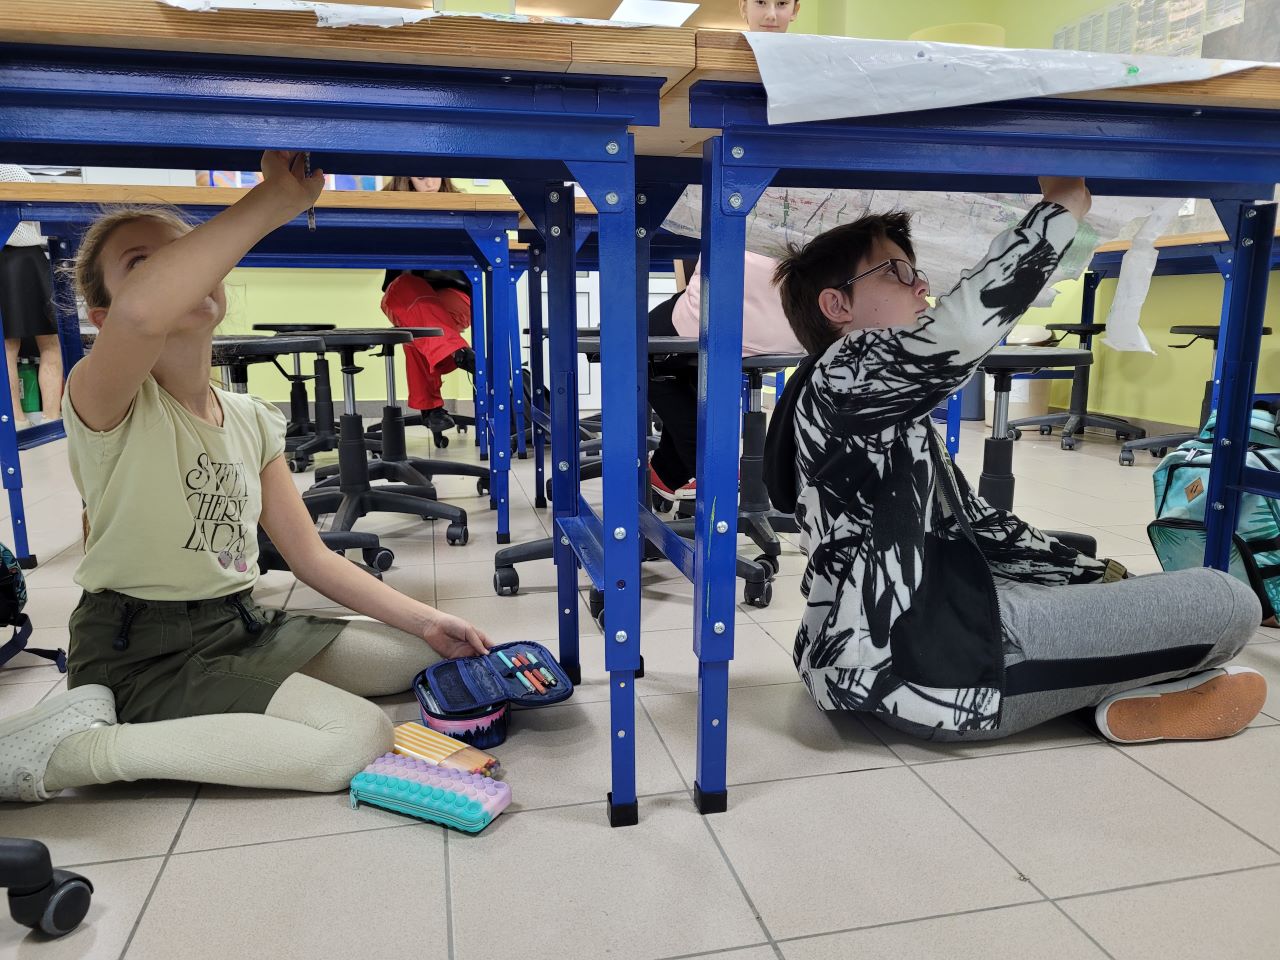 W sali lekcyjnej dwójka uczniów: uczennica i uczeń siedzą pod ławką z głową zadartą do góry i ręką uniesioną w stronę blatu